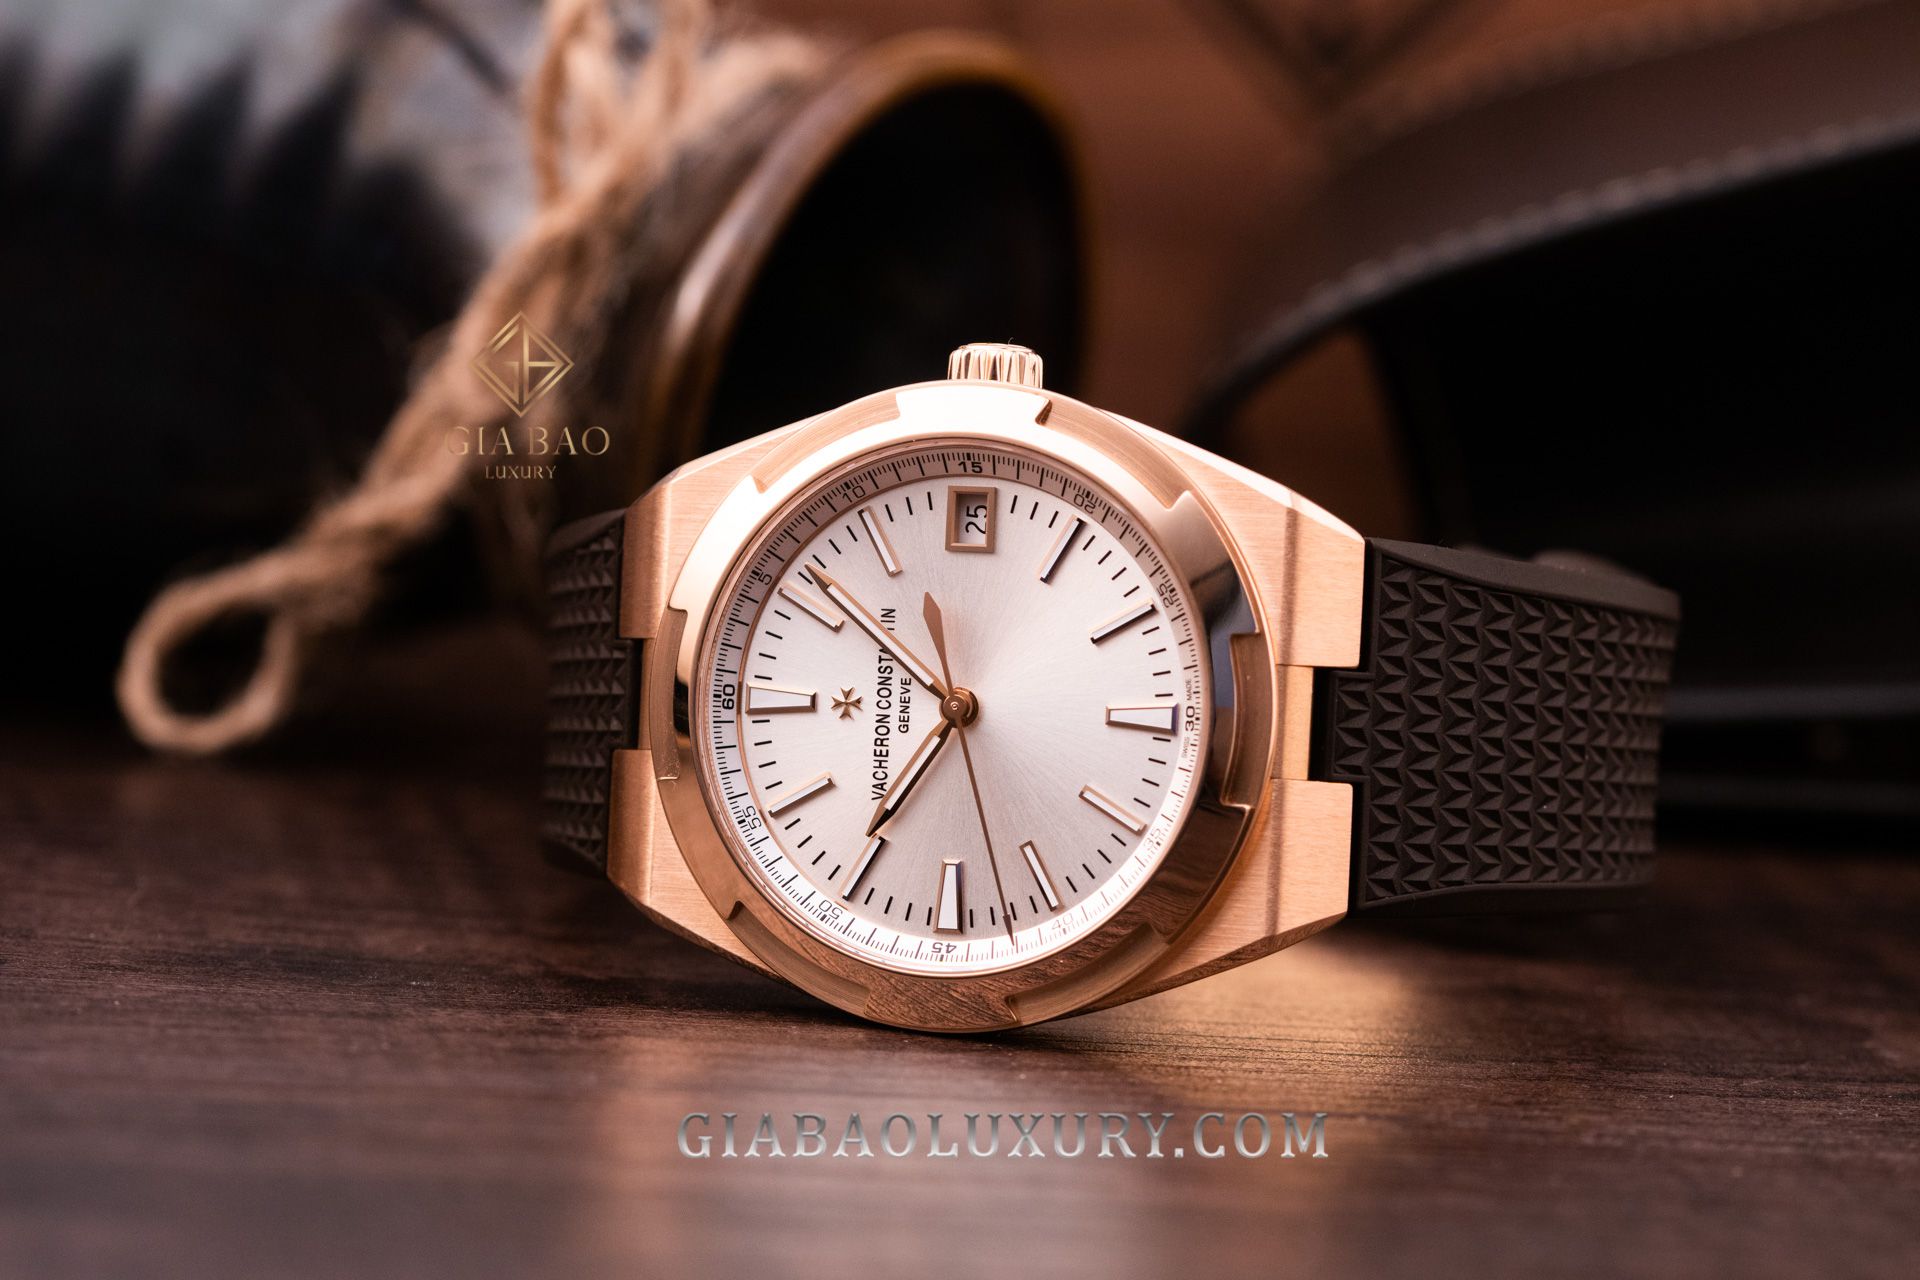 Gia Bảo Luxury cung cấp dịch vụ thu mua đồng hồ Vacheron Constantin Overseas chính hãng